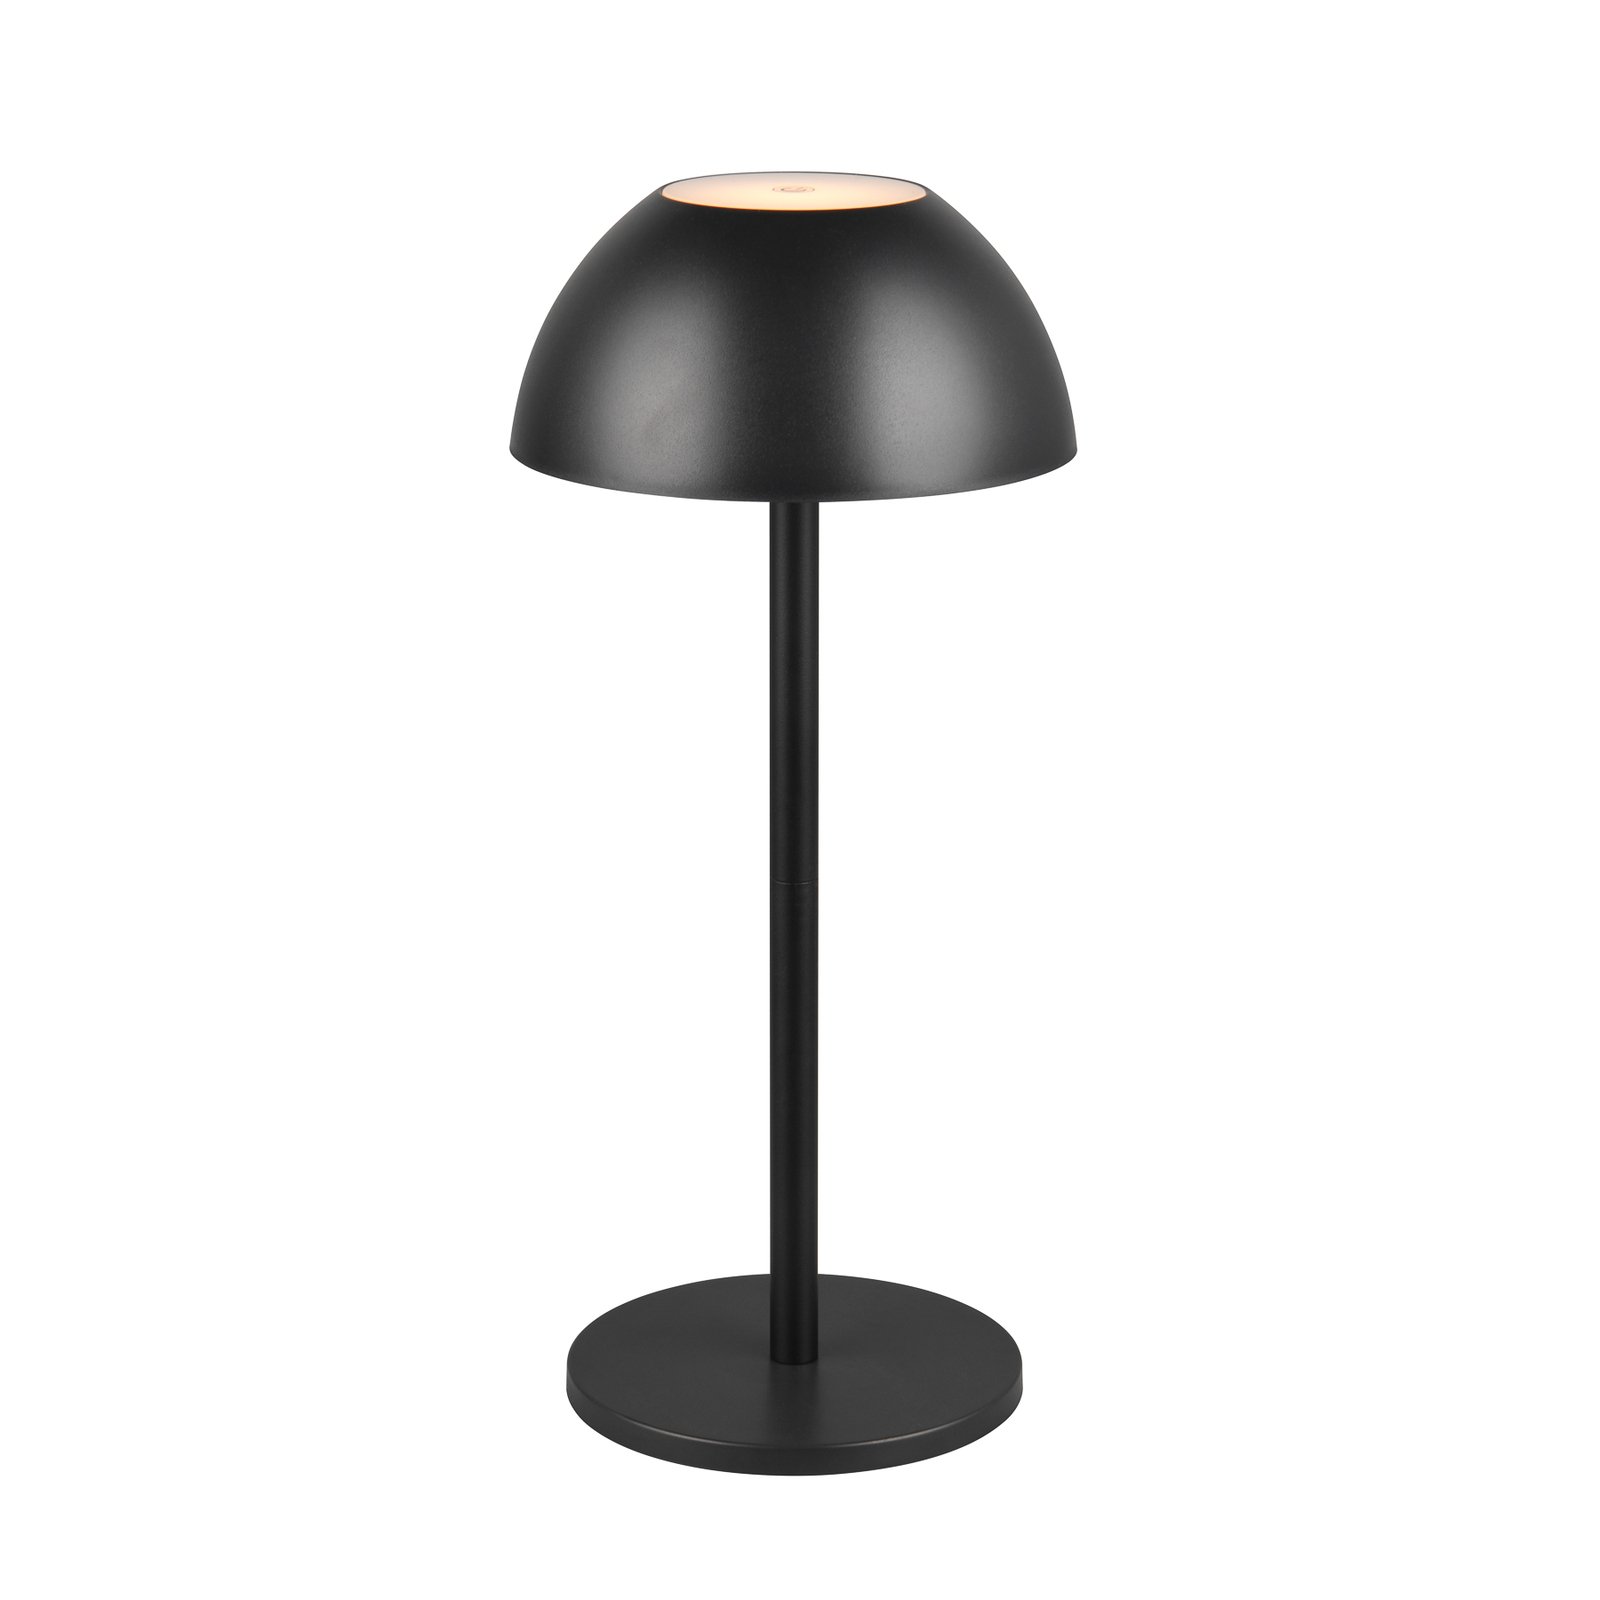 Stolní lampa Ricardo LED s dobíjením, černá, výška 30 cm, plastová